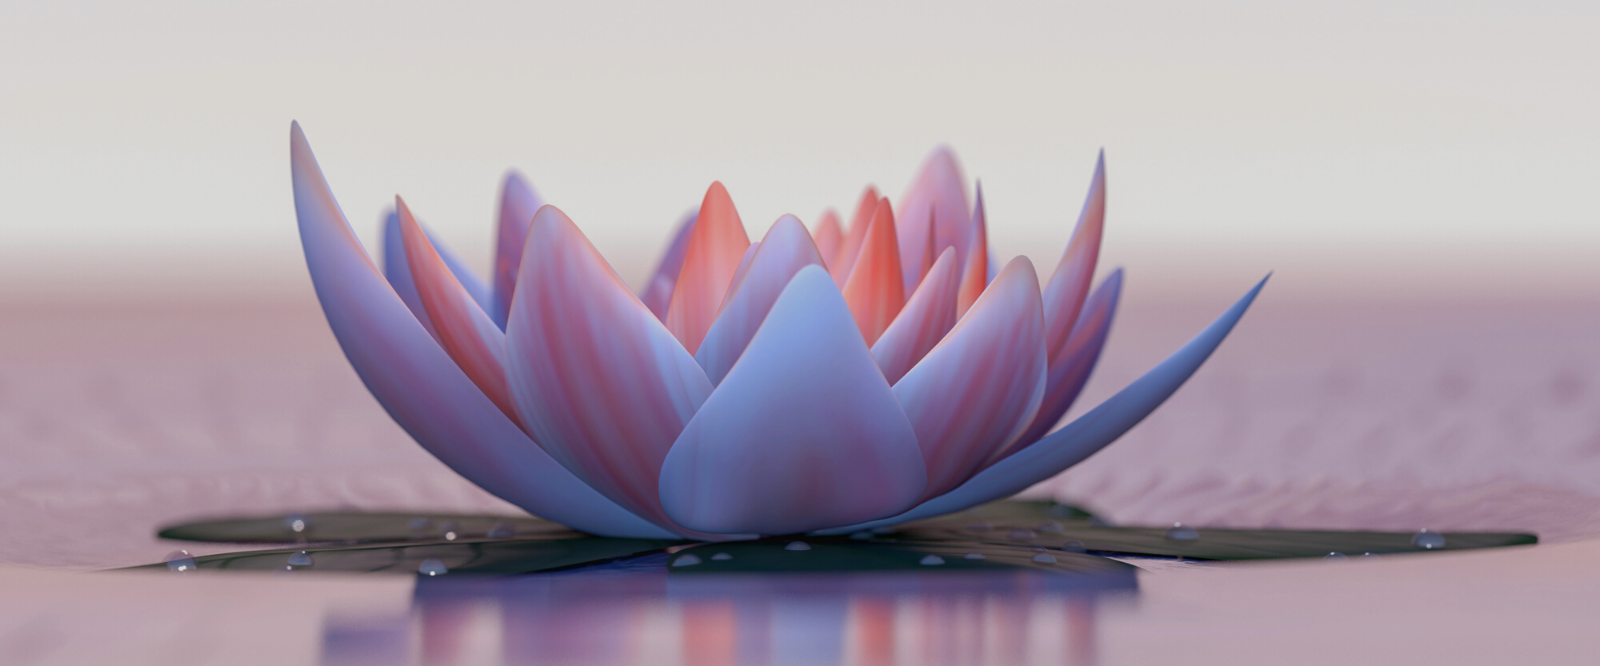 nefertem lotus flower on lake